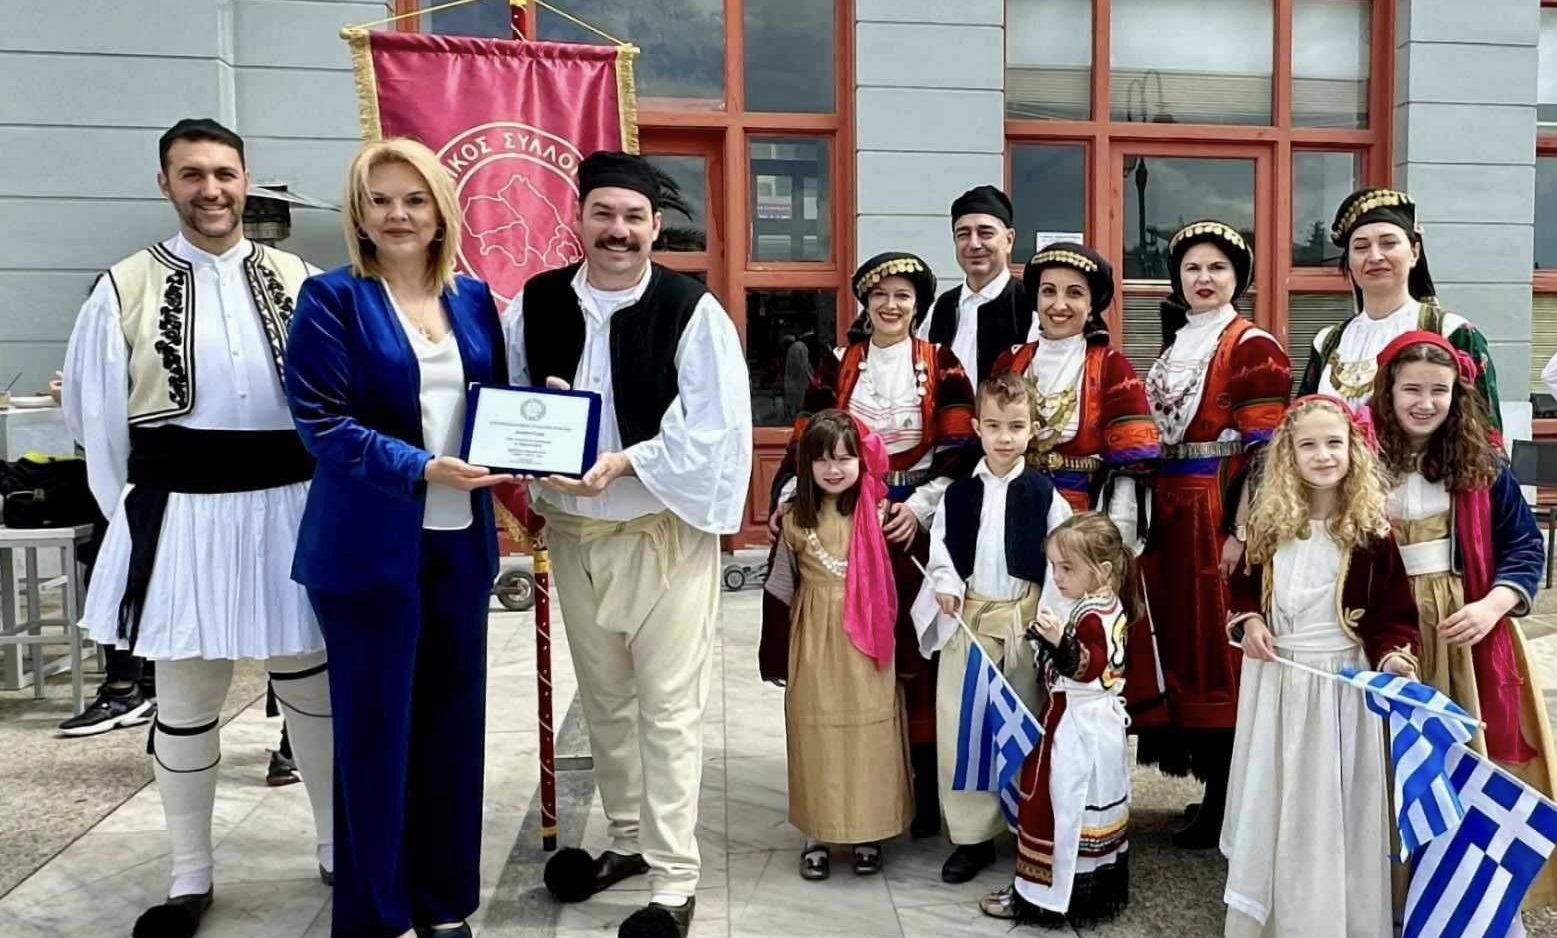 Εύβοια: Επίτιμο μέλος του Πανθεσσαλικού Συλλόγου Εύβοιας η Δήμαρχος Χαλκιδέων